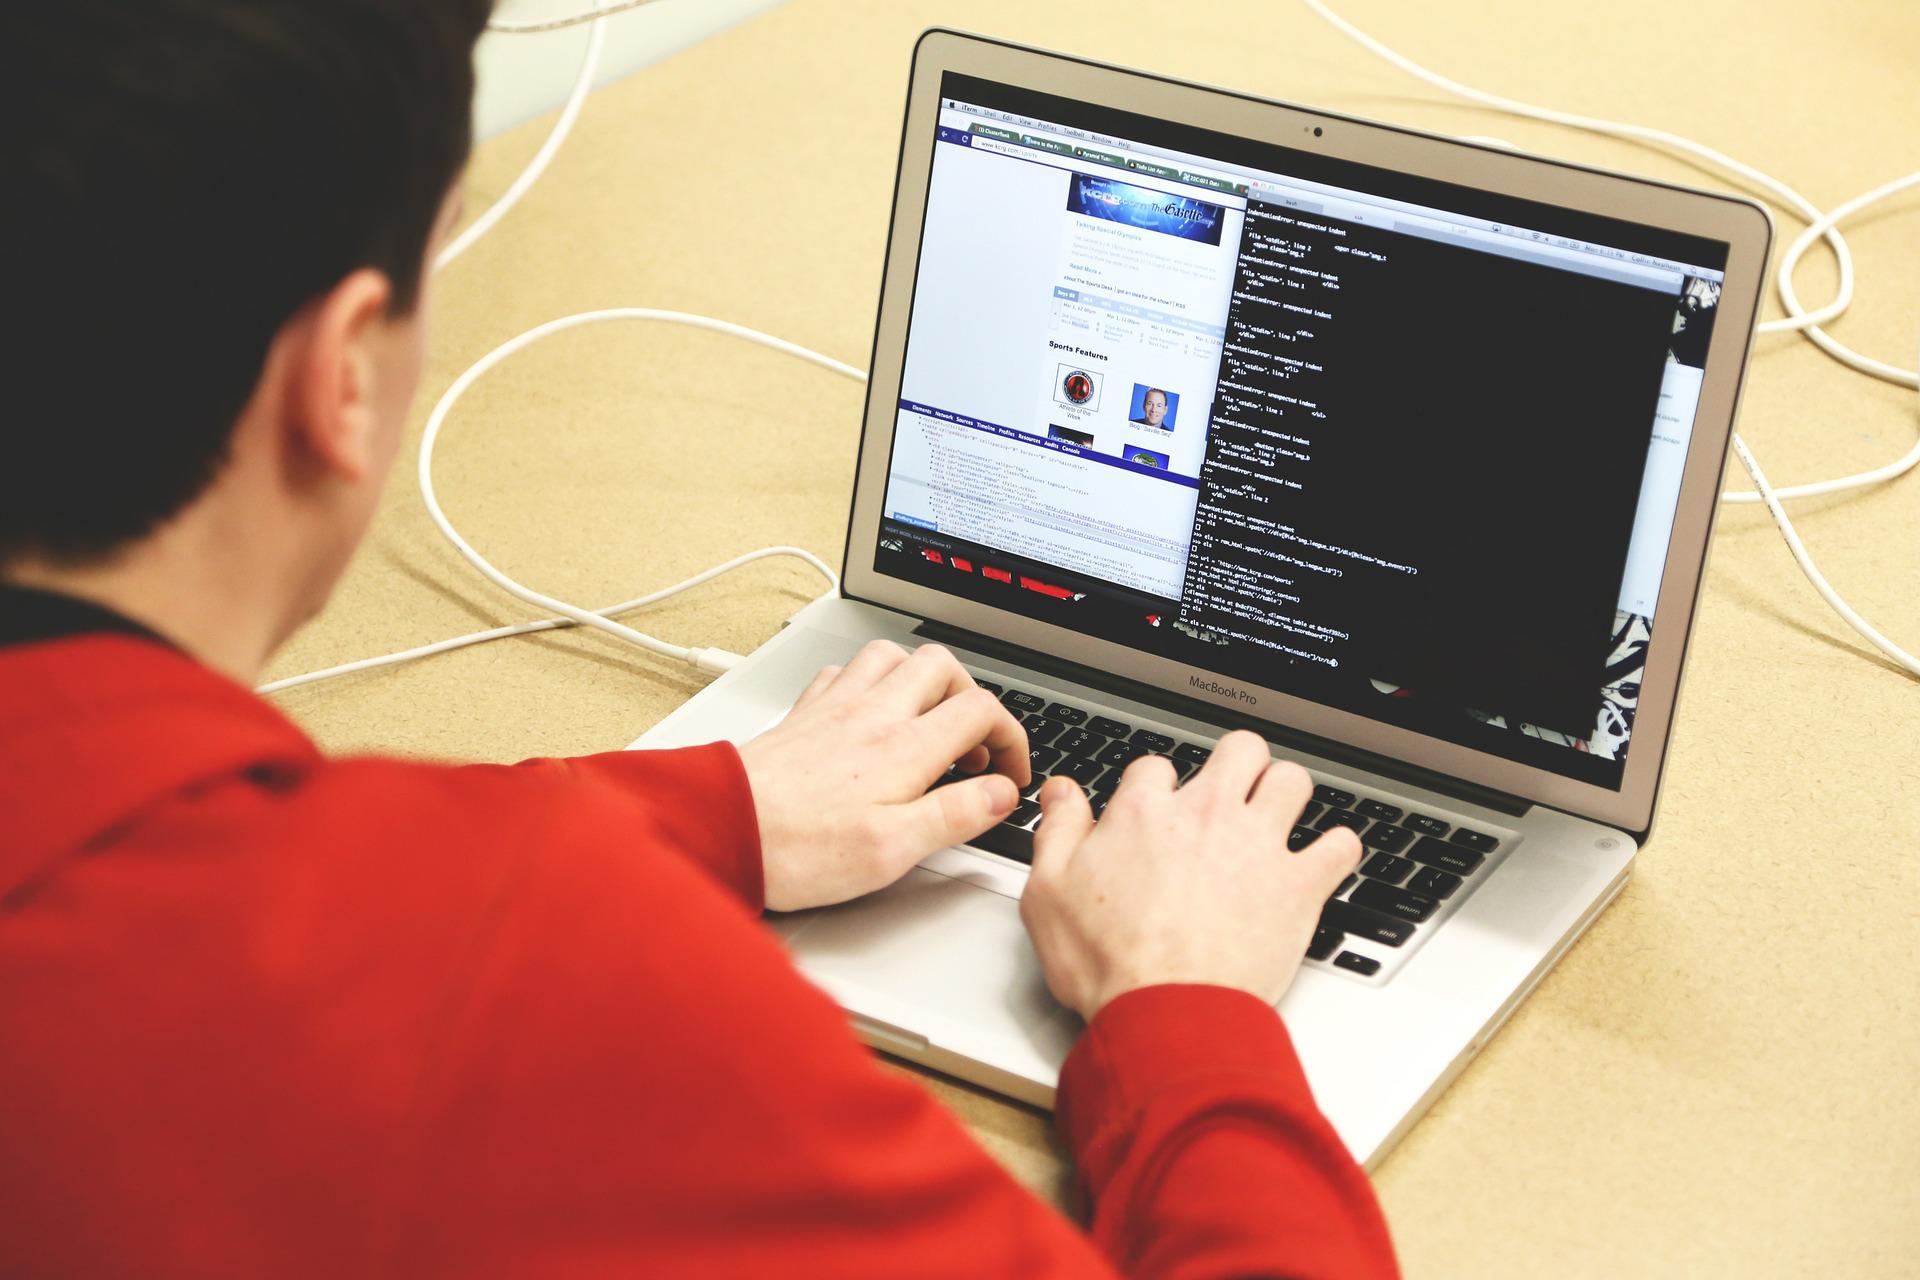 Ein junger Mann sitzt vor einem Laptop und tippt etwas auf der Tastatur. Auf dem Bildschirm sind zwei Fenster geöffnet. Eine Lösung für den HTTP Error 500 kann das Löschen aller Erweiterungen, die du gerade installiert hast, sein.